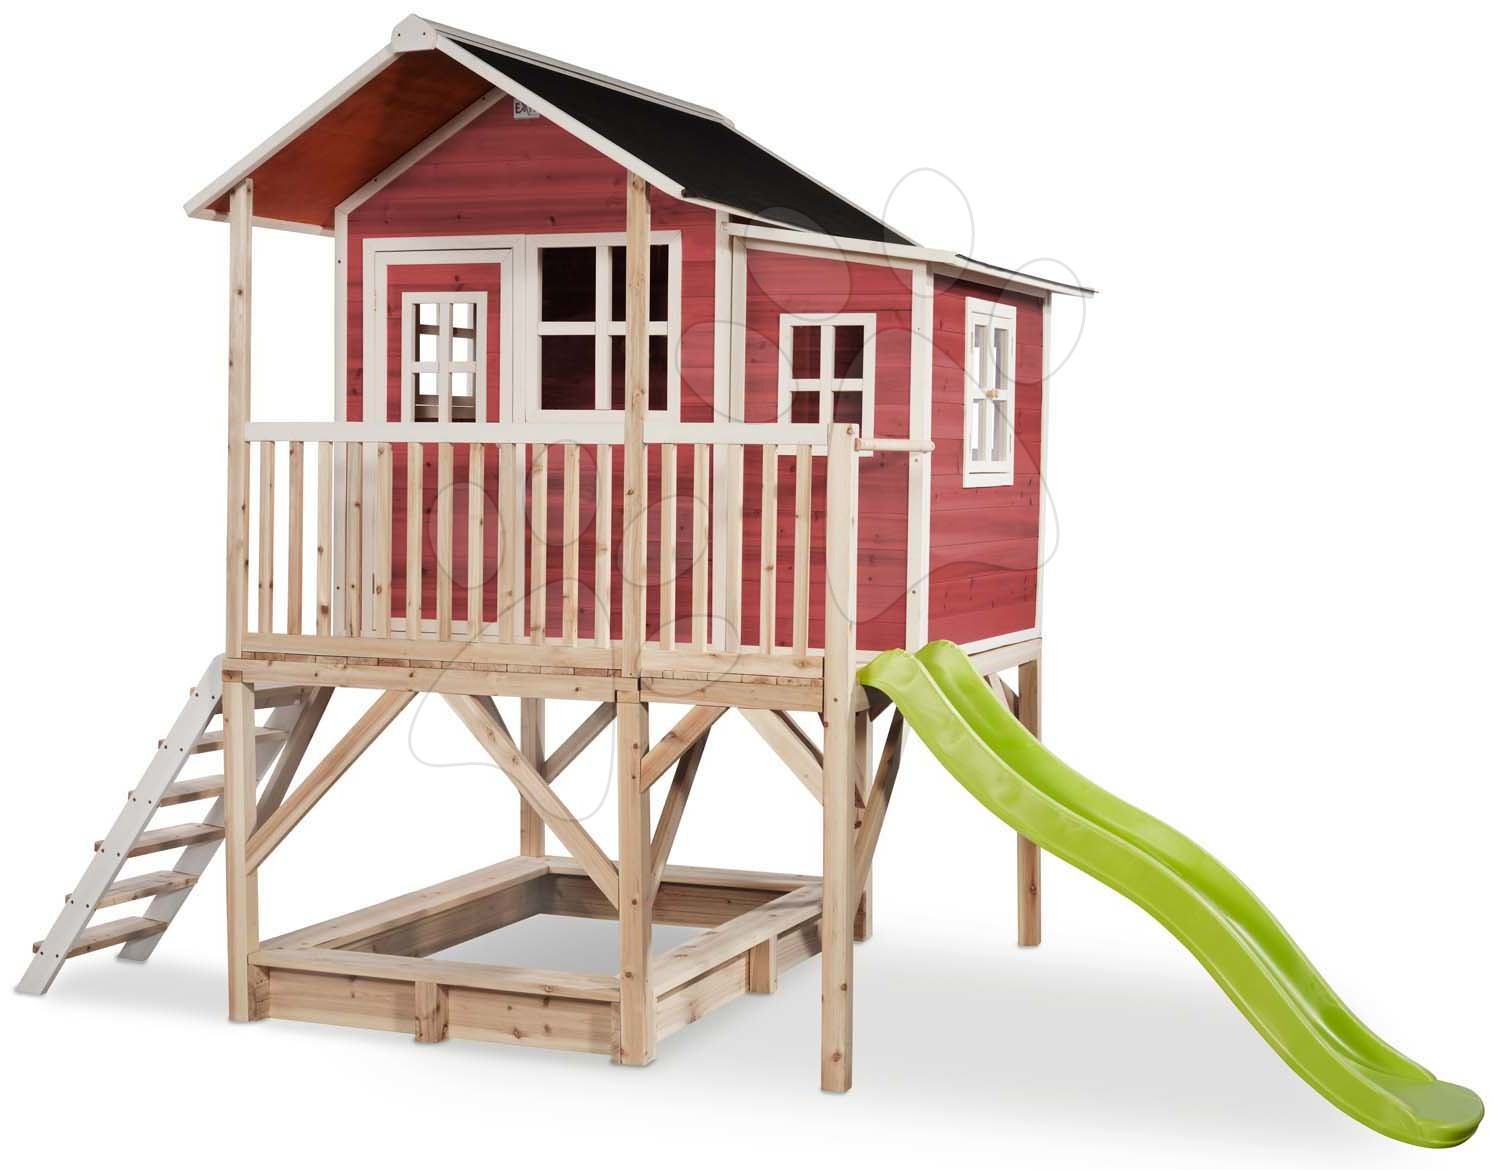 gijzelaar hop Occlusie EXIT Loft 550 wooden playhouse - red